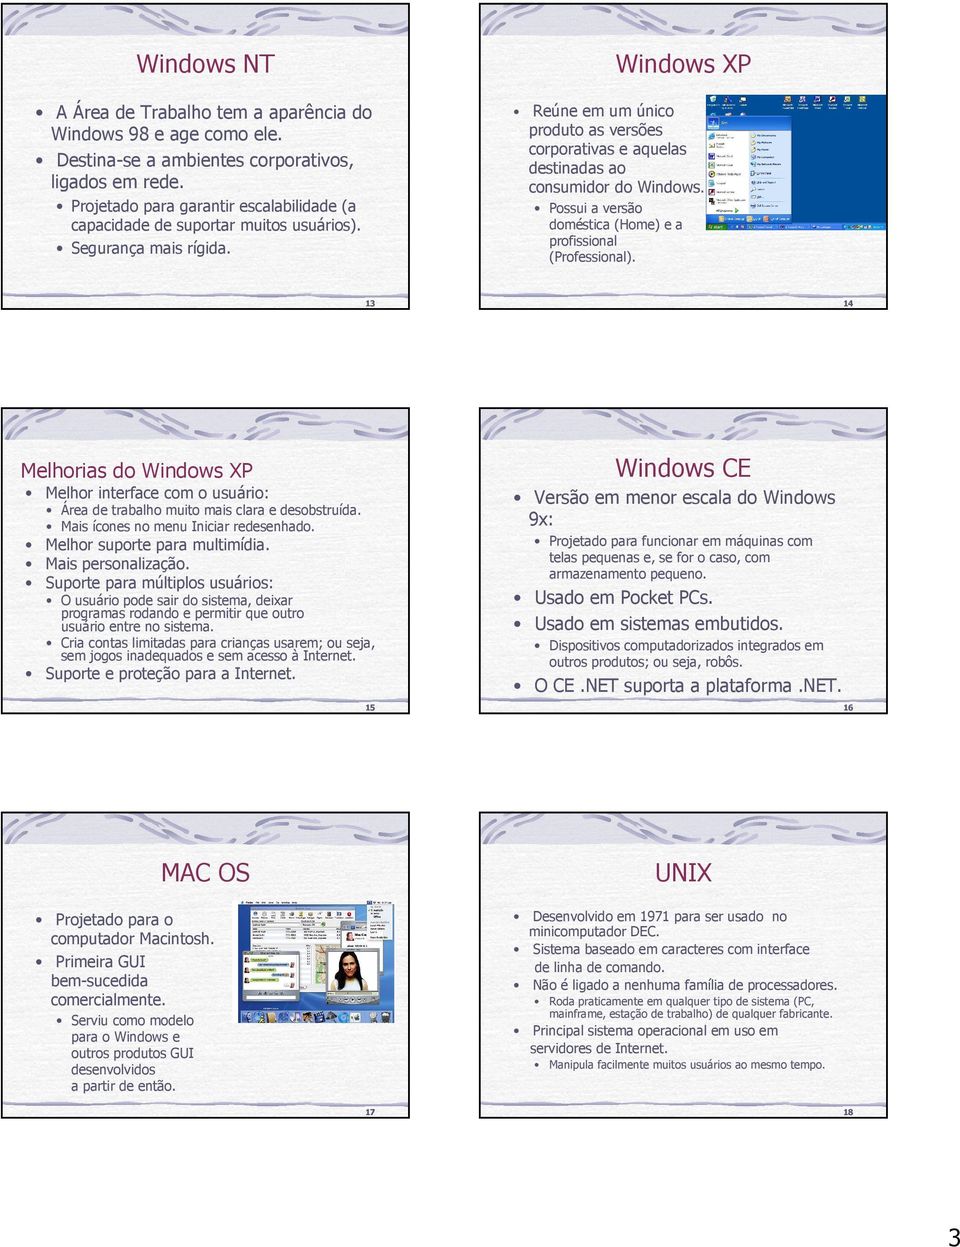 Windows XP Reúne em um único produto as versões corporativas e aquelas destinadas ao consumidor do Windows. Possui a versão doméstica (Home) e a profissional (Professional).